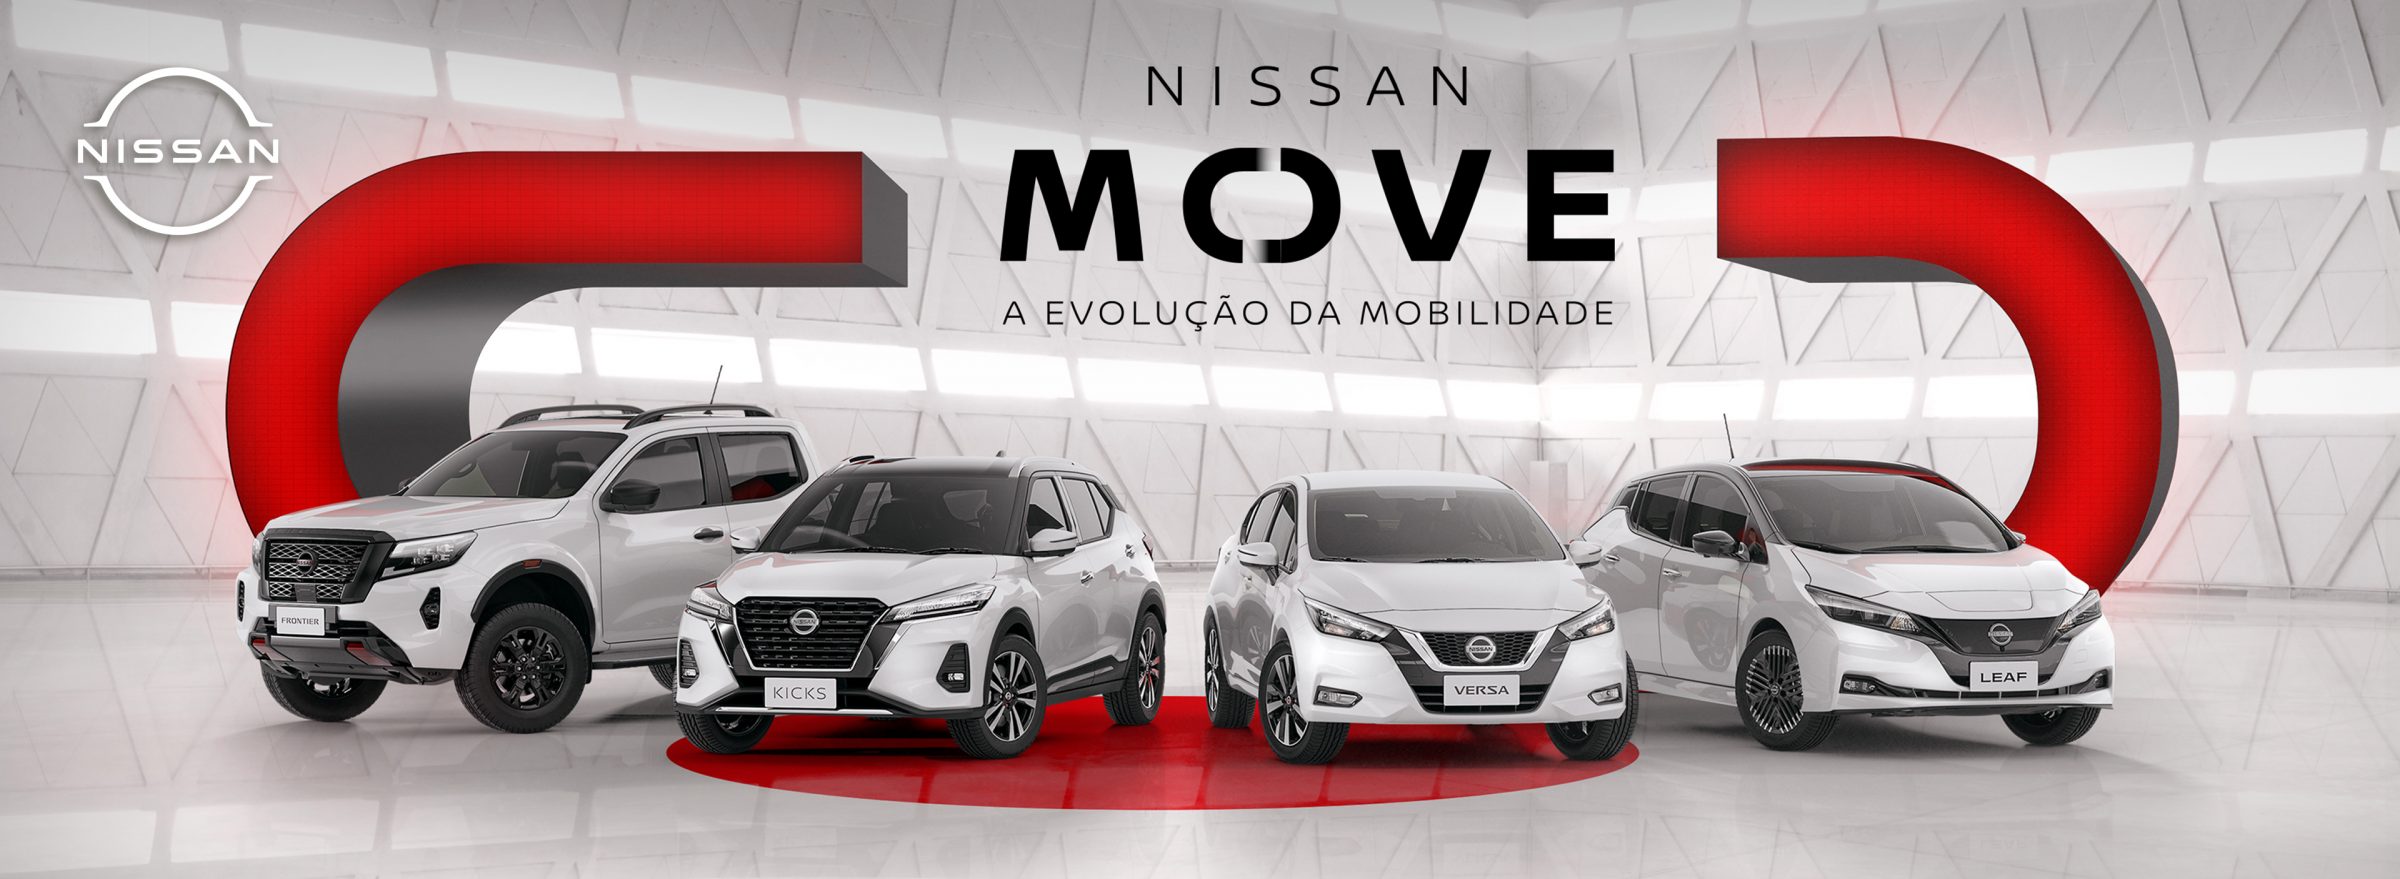 Serviço de assinatura de carros da Nissan se expande;  veja cidades novas